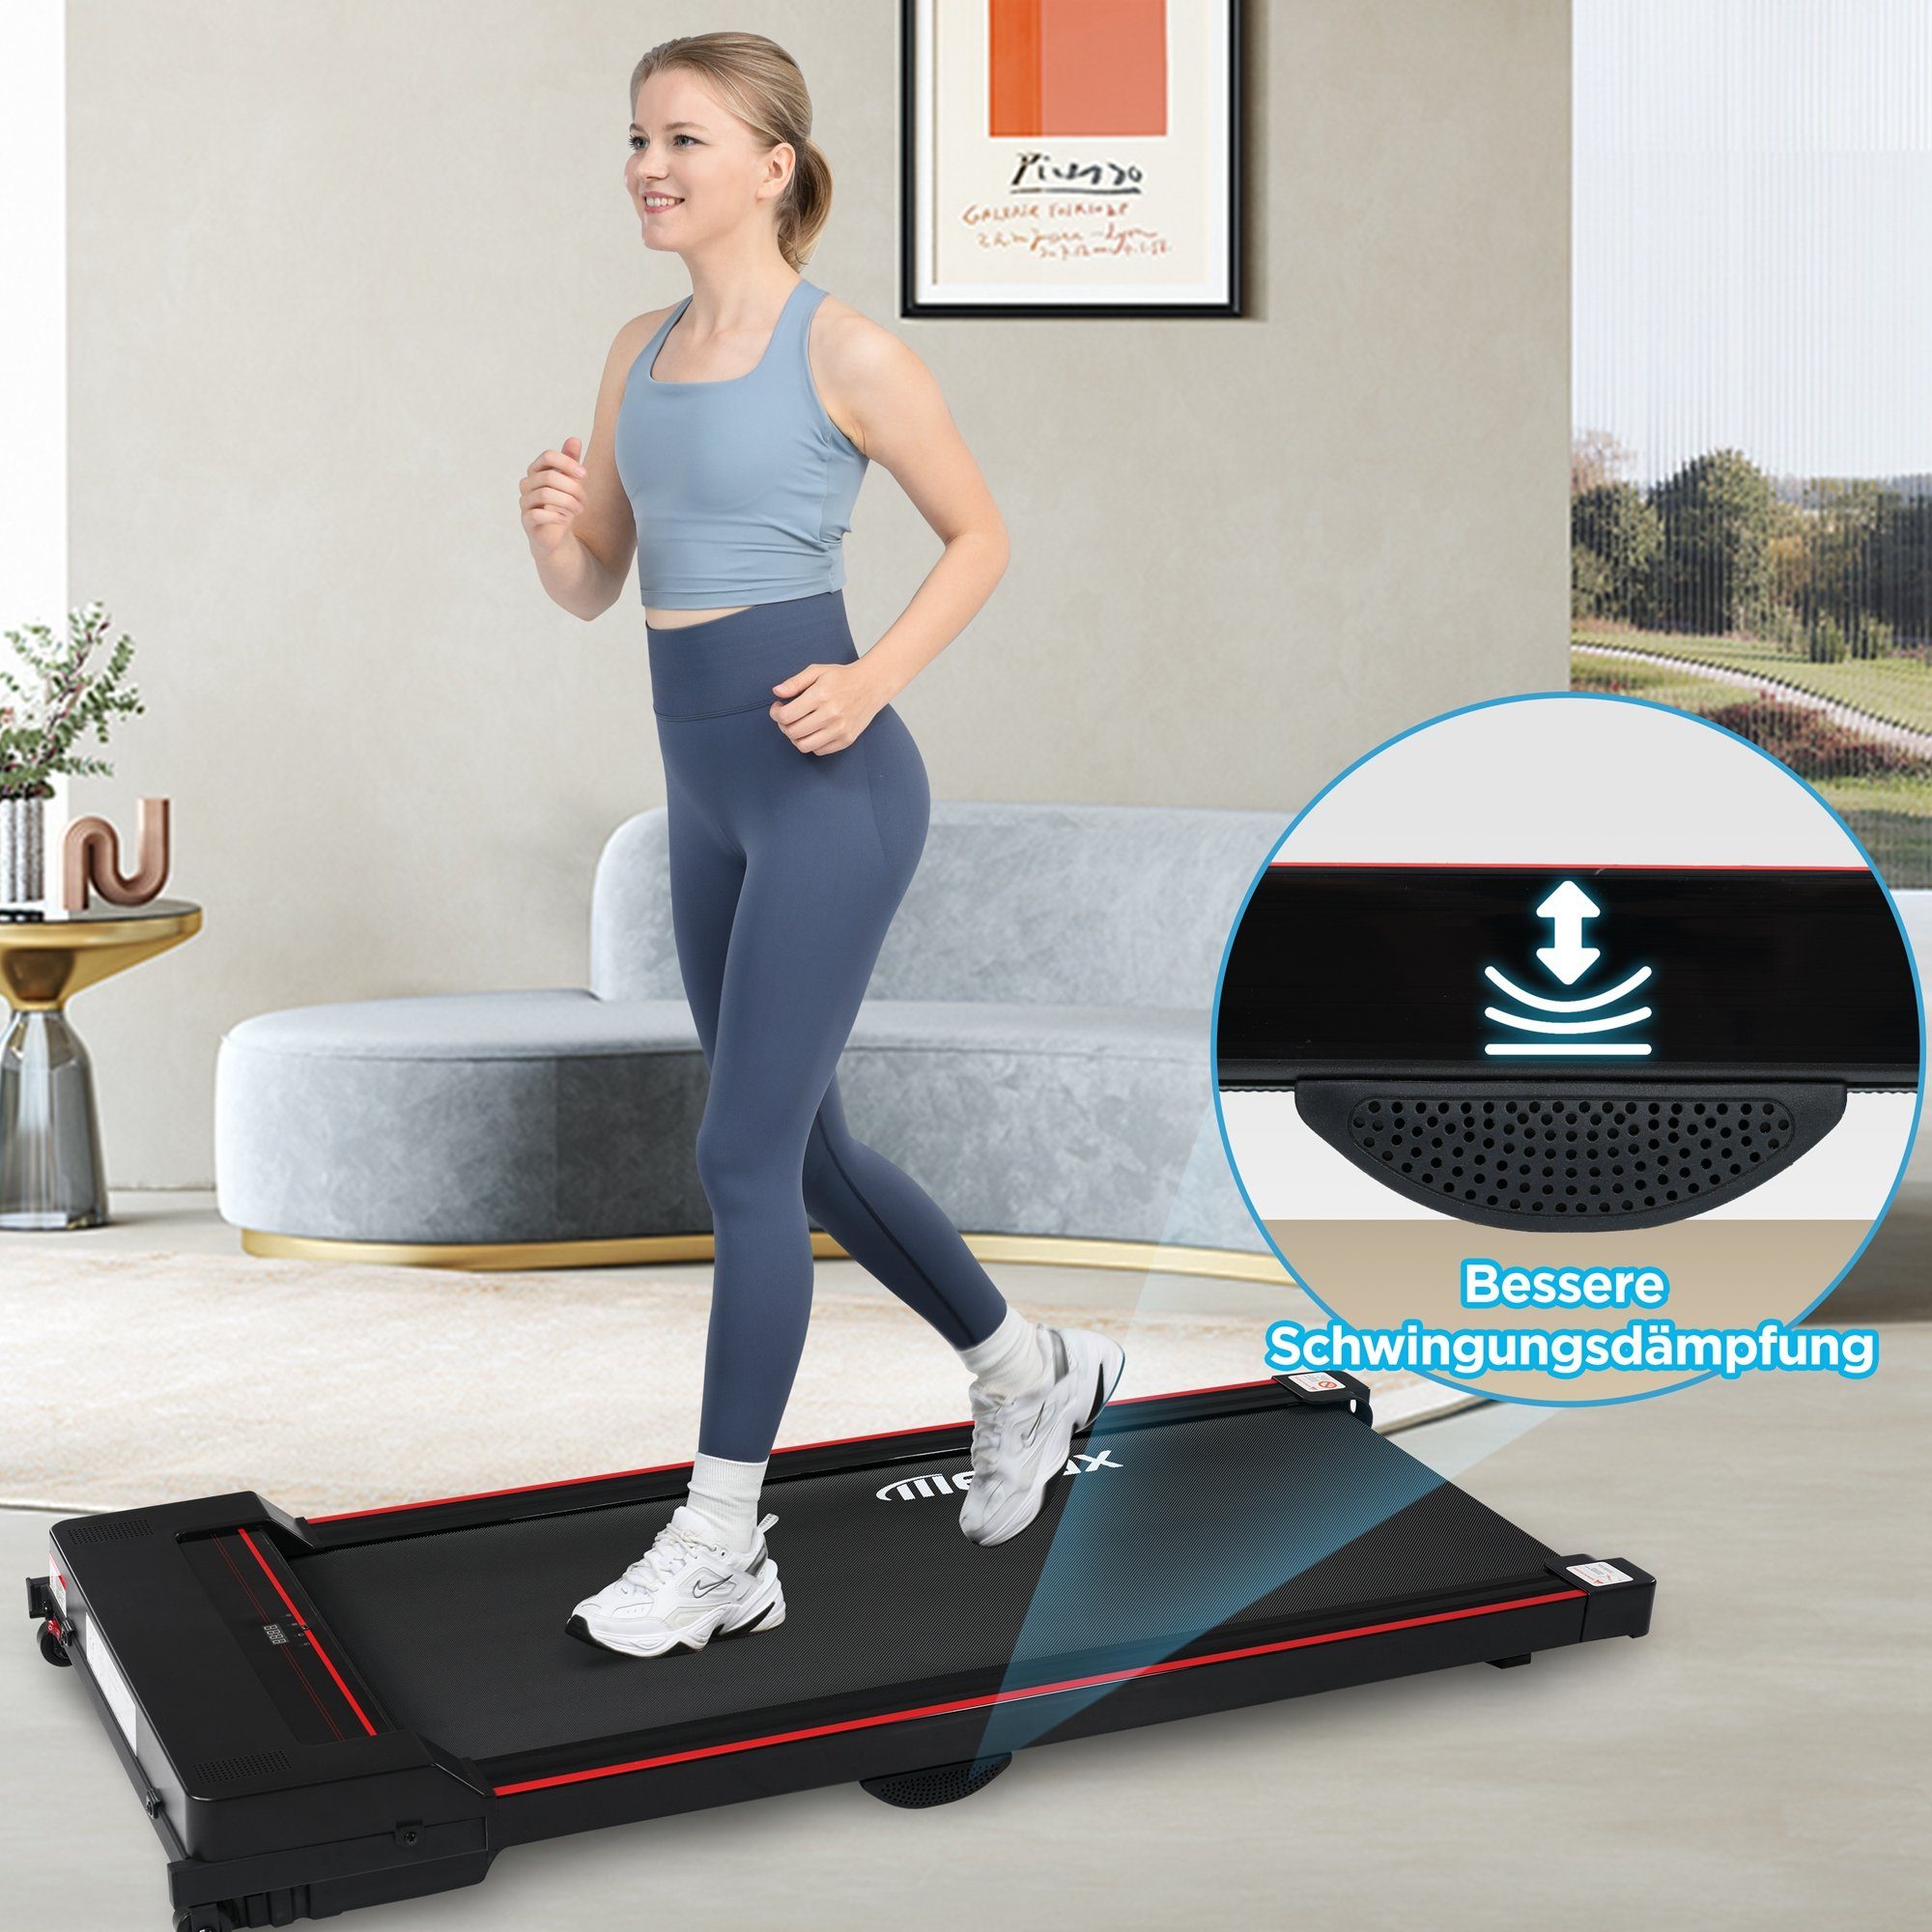 Jogging Treadmill, KM/H, Merax Laufband, Pad 1-8 Walking Underdesk